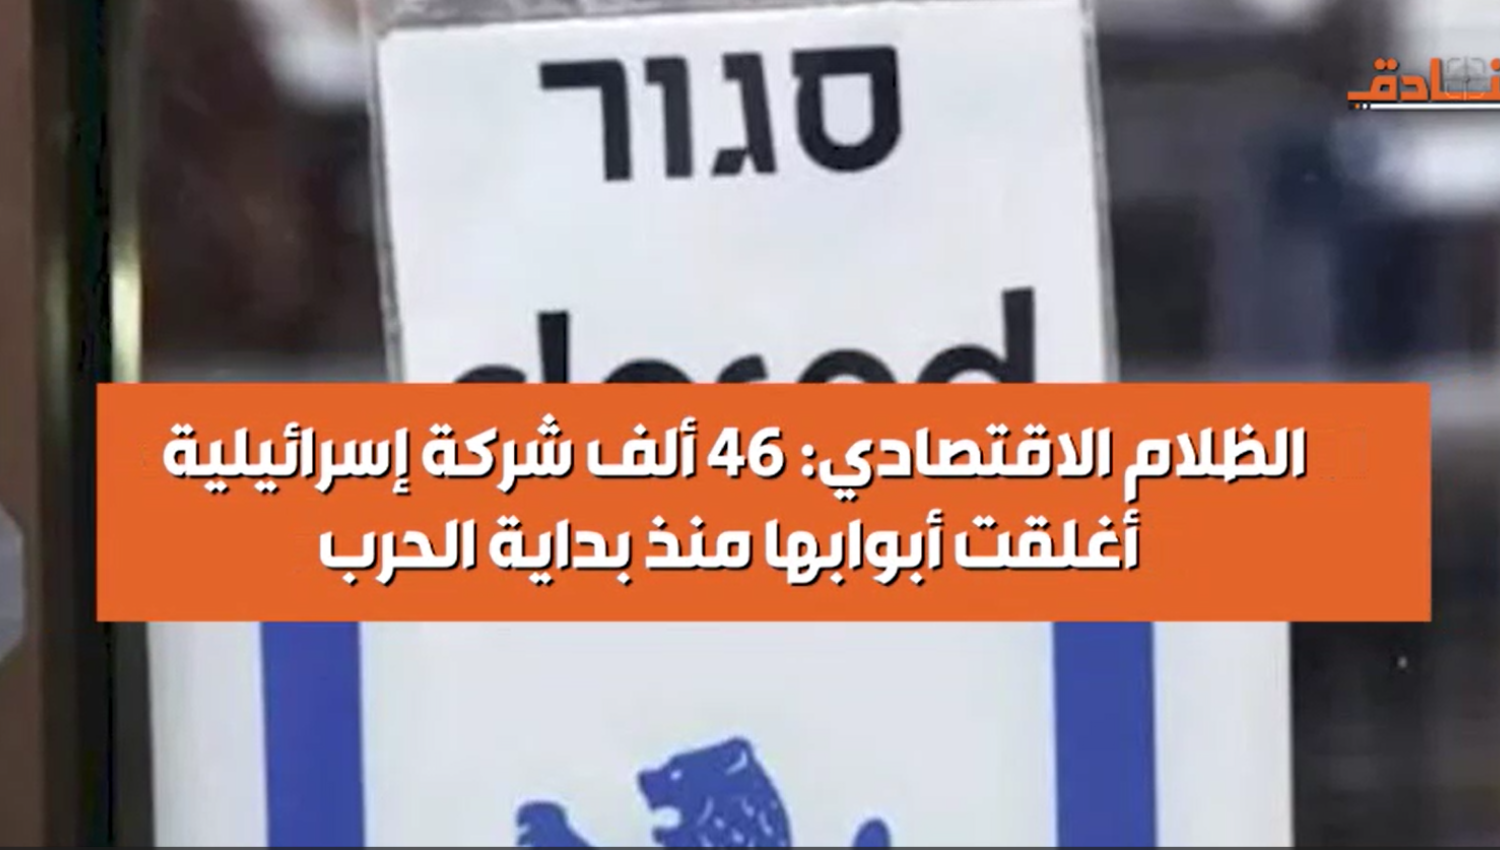 الظلام الاقتصادي: 46 ألف شركة إسرائيلية أُغلقت أبوابها منذ بداية الحرب